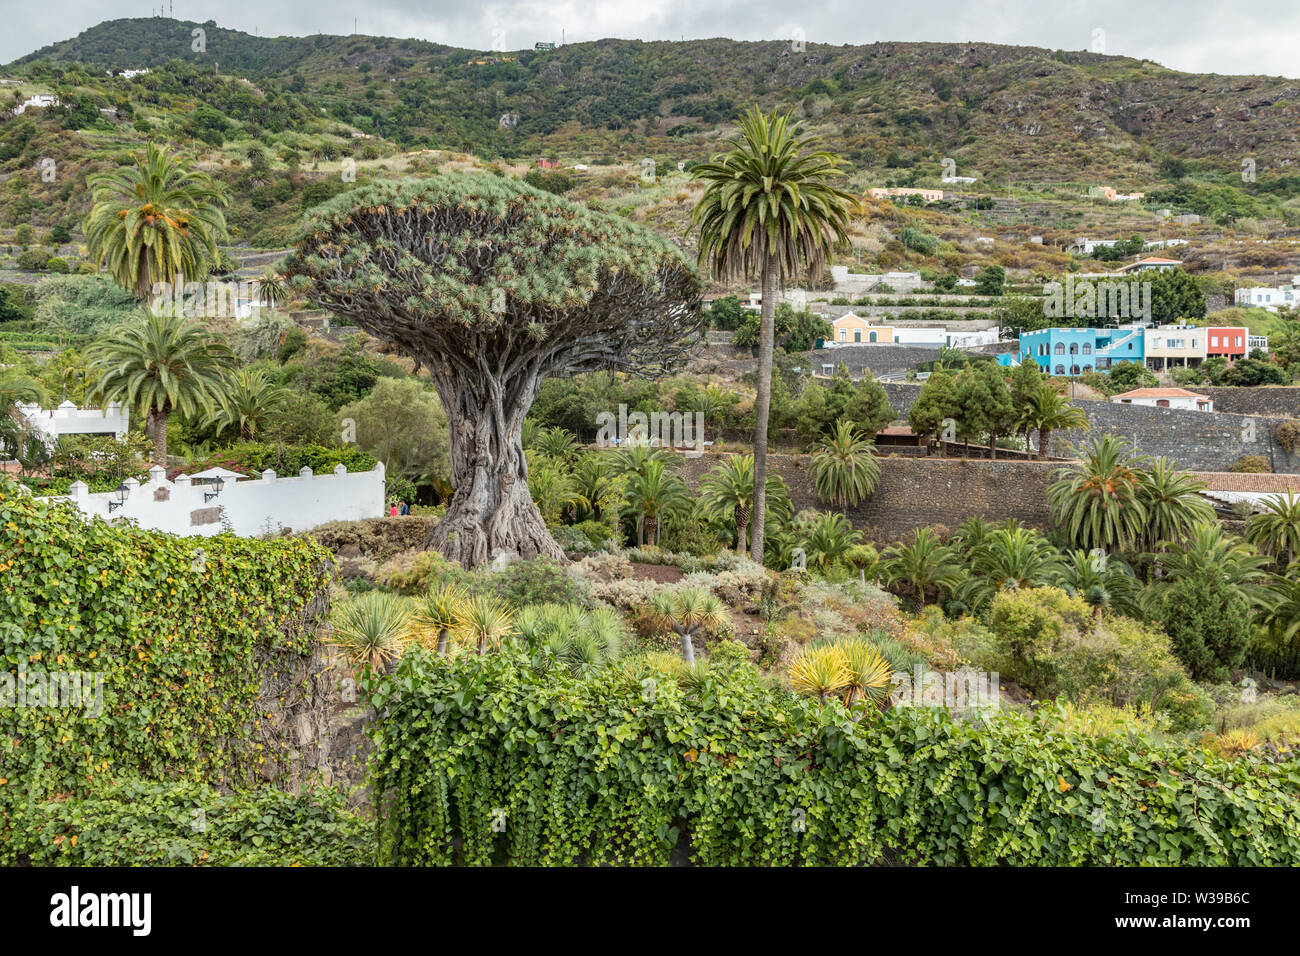 Blick auf den Botanischen Garten und den berühmten tausendjährige Baum Drago in Icod de los Vinos. Die älteste und größte Dracaena in der Welt. Teneriffa, Kanarische Inseln Stockfoto